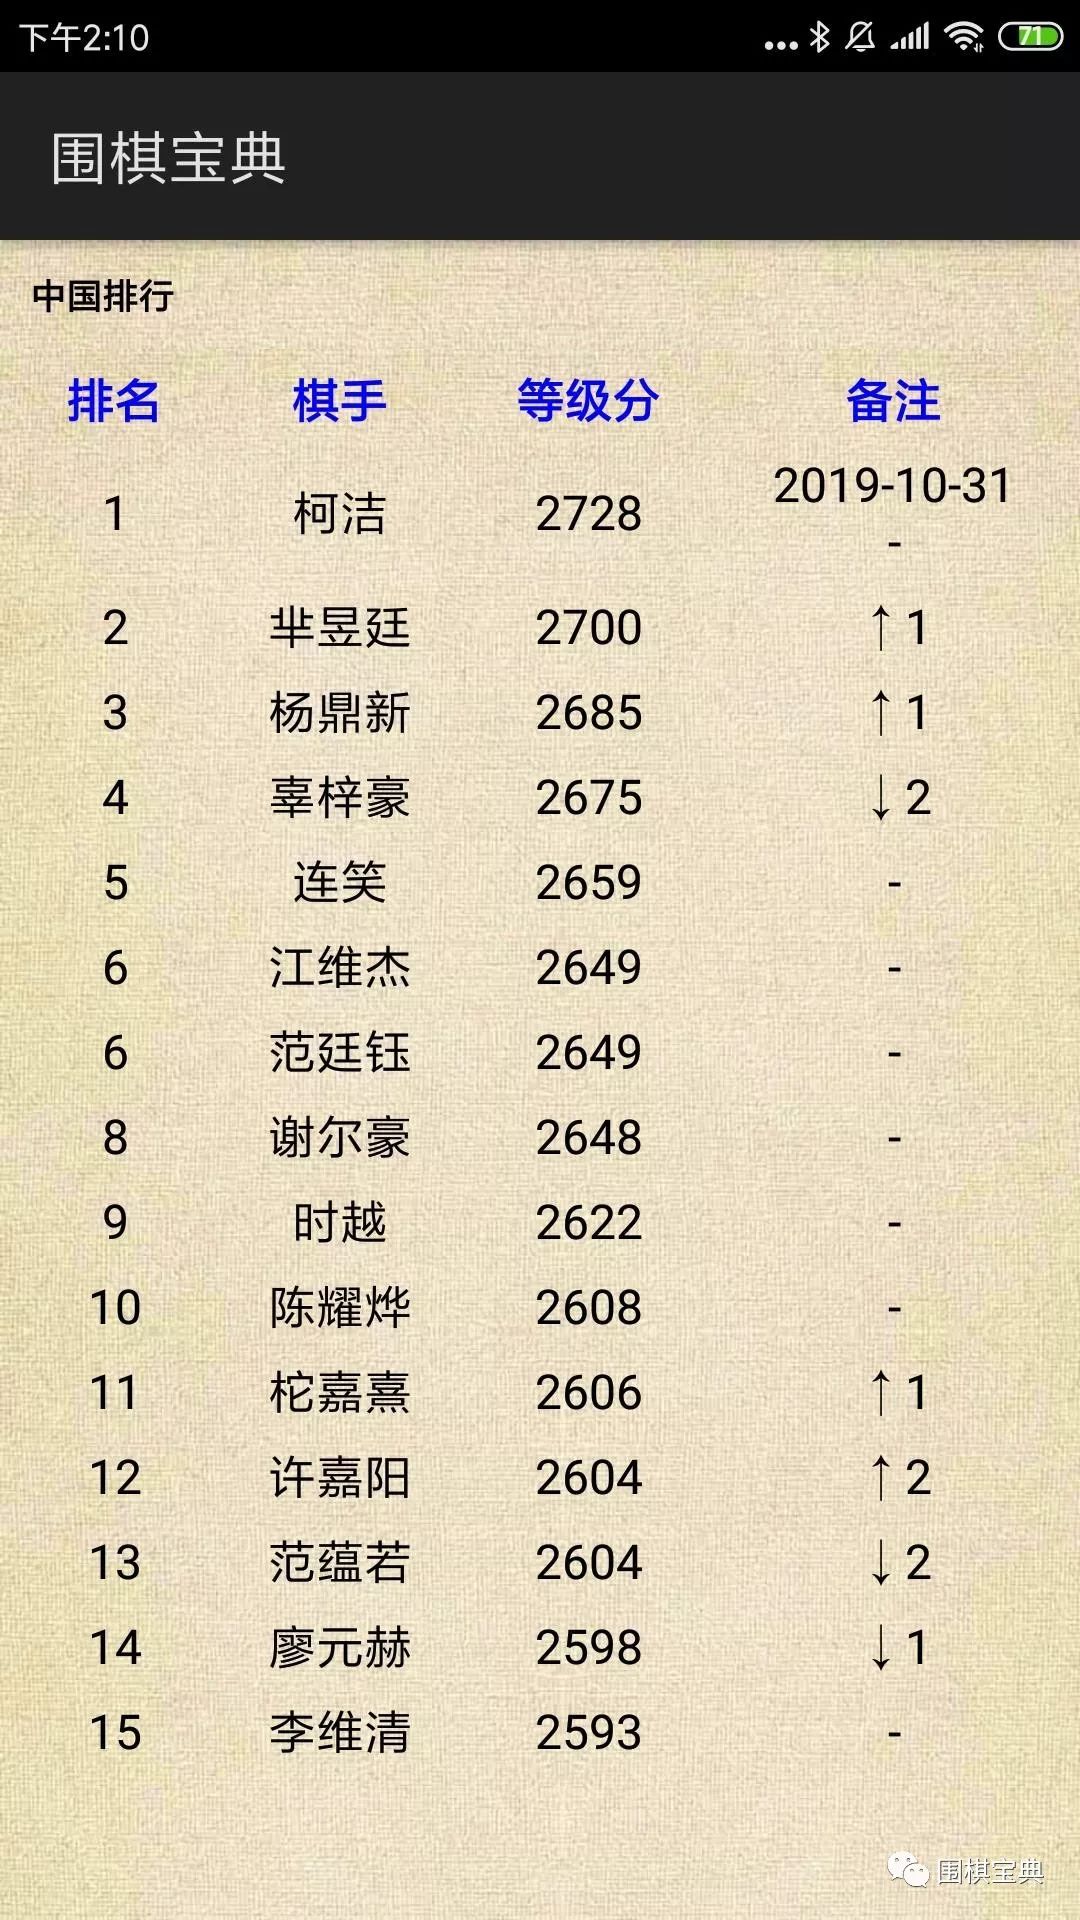 中国围棋等级分排行榜前15位(目前中国围棋等级分最新排名第一的是)